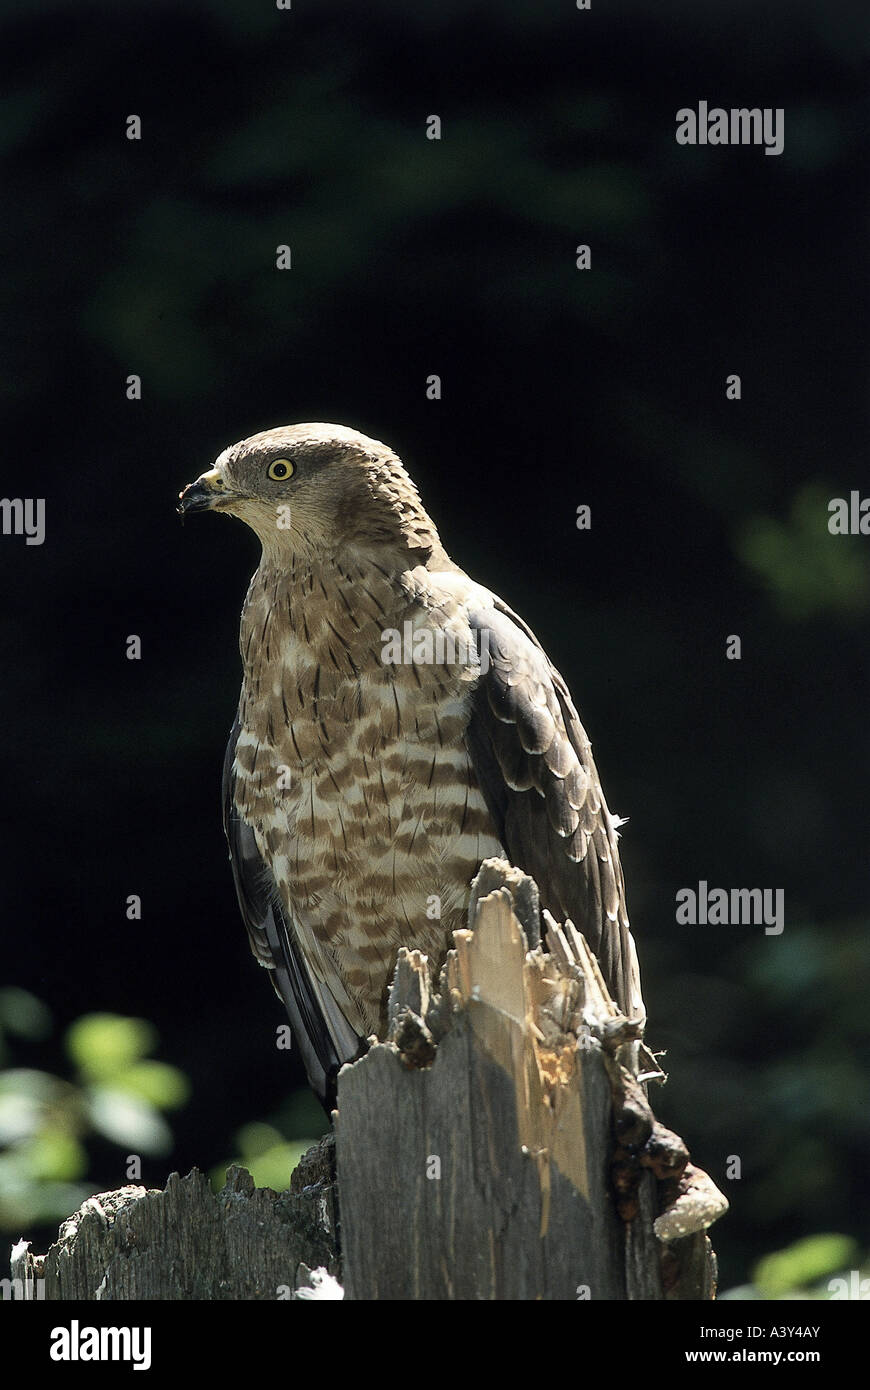 Zoologia / animali, uccelli / bird, falco pecchiaiolo, (Pernis apivorus), sul tronco di albero, distribuzione: Europa, seduto, uccello da preda, un Foto Stock